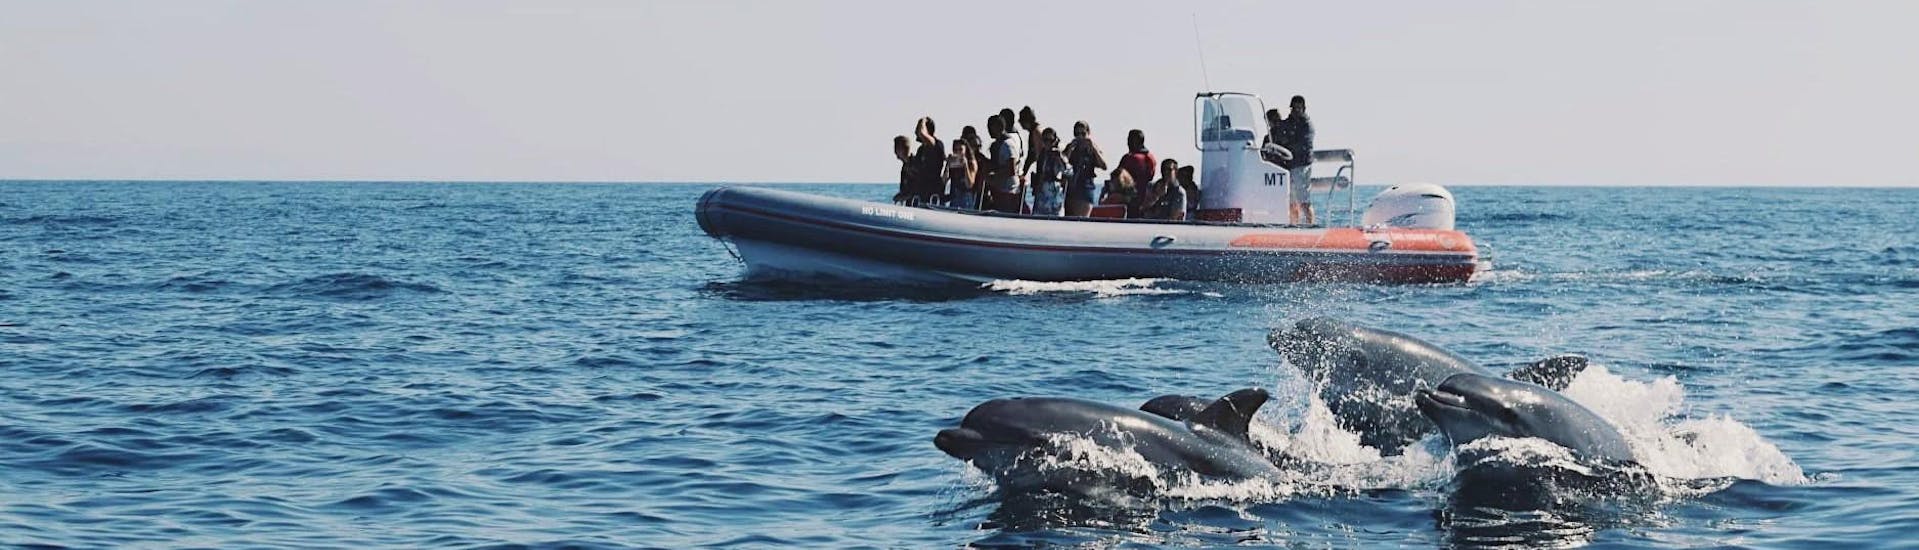 Des gens prennent des photos des dauphins sauvages qui nagent autour du bateau avec Allboat Albufeira.